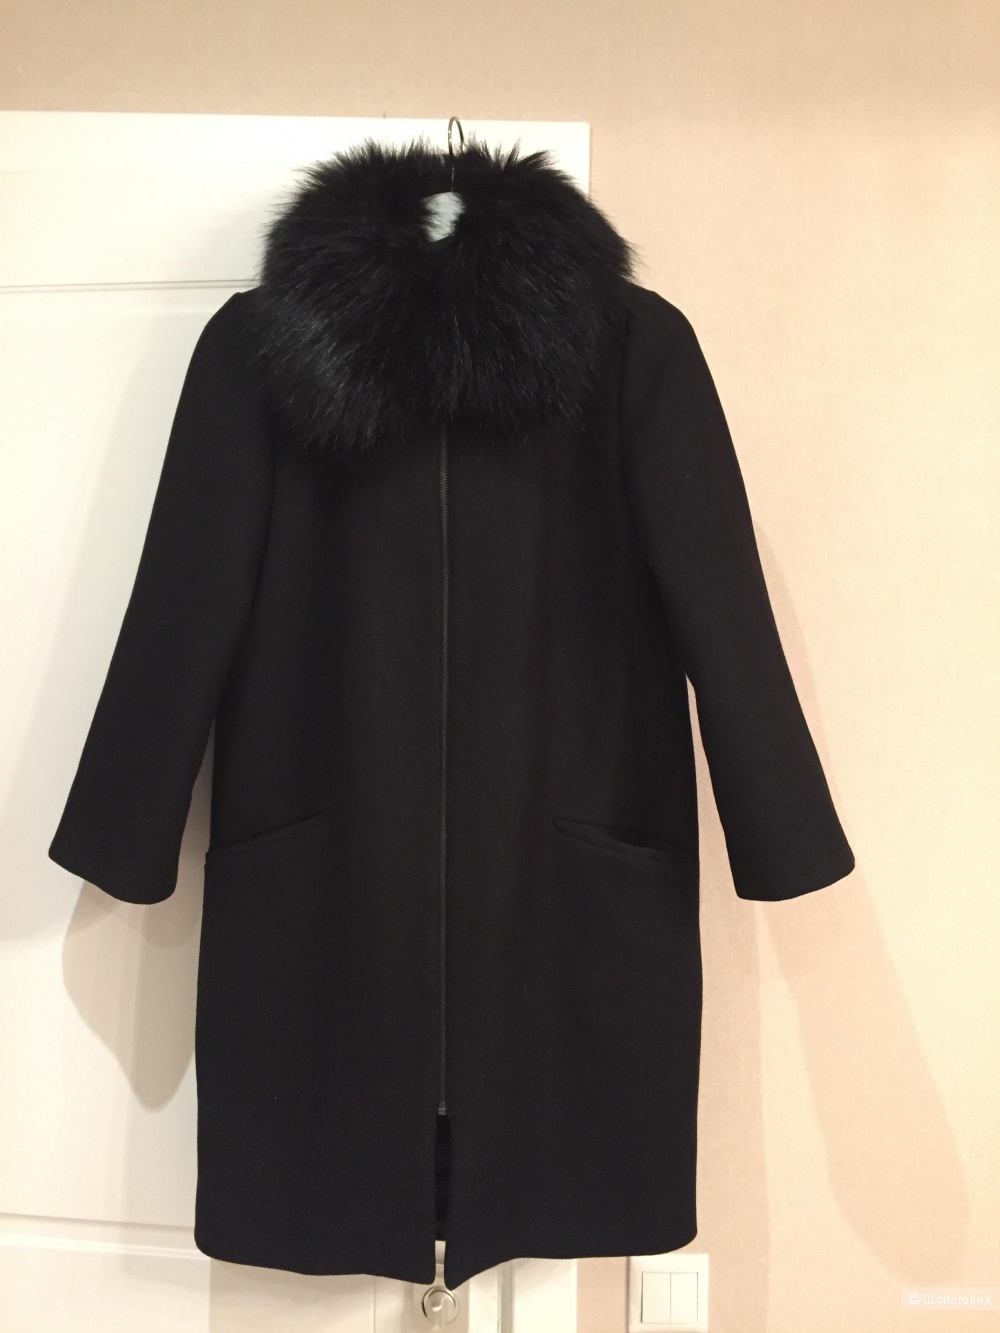 Черное пальто zara в размере S